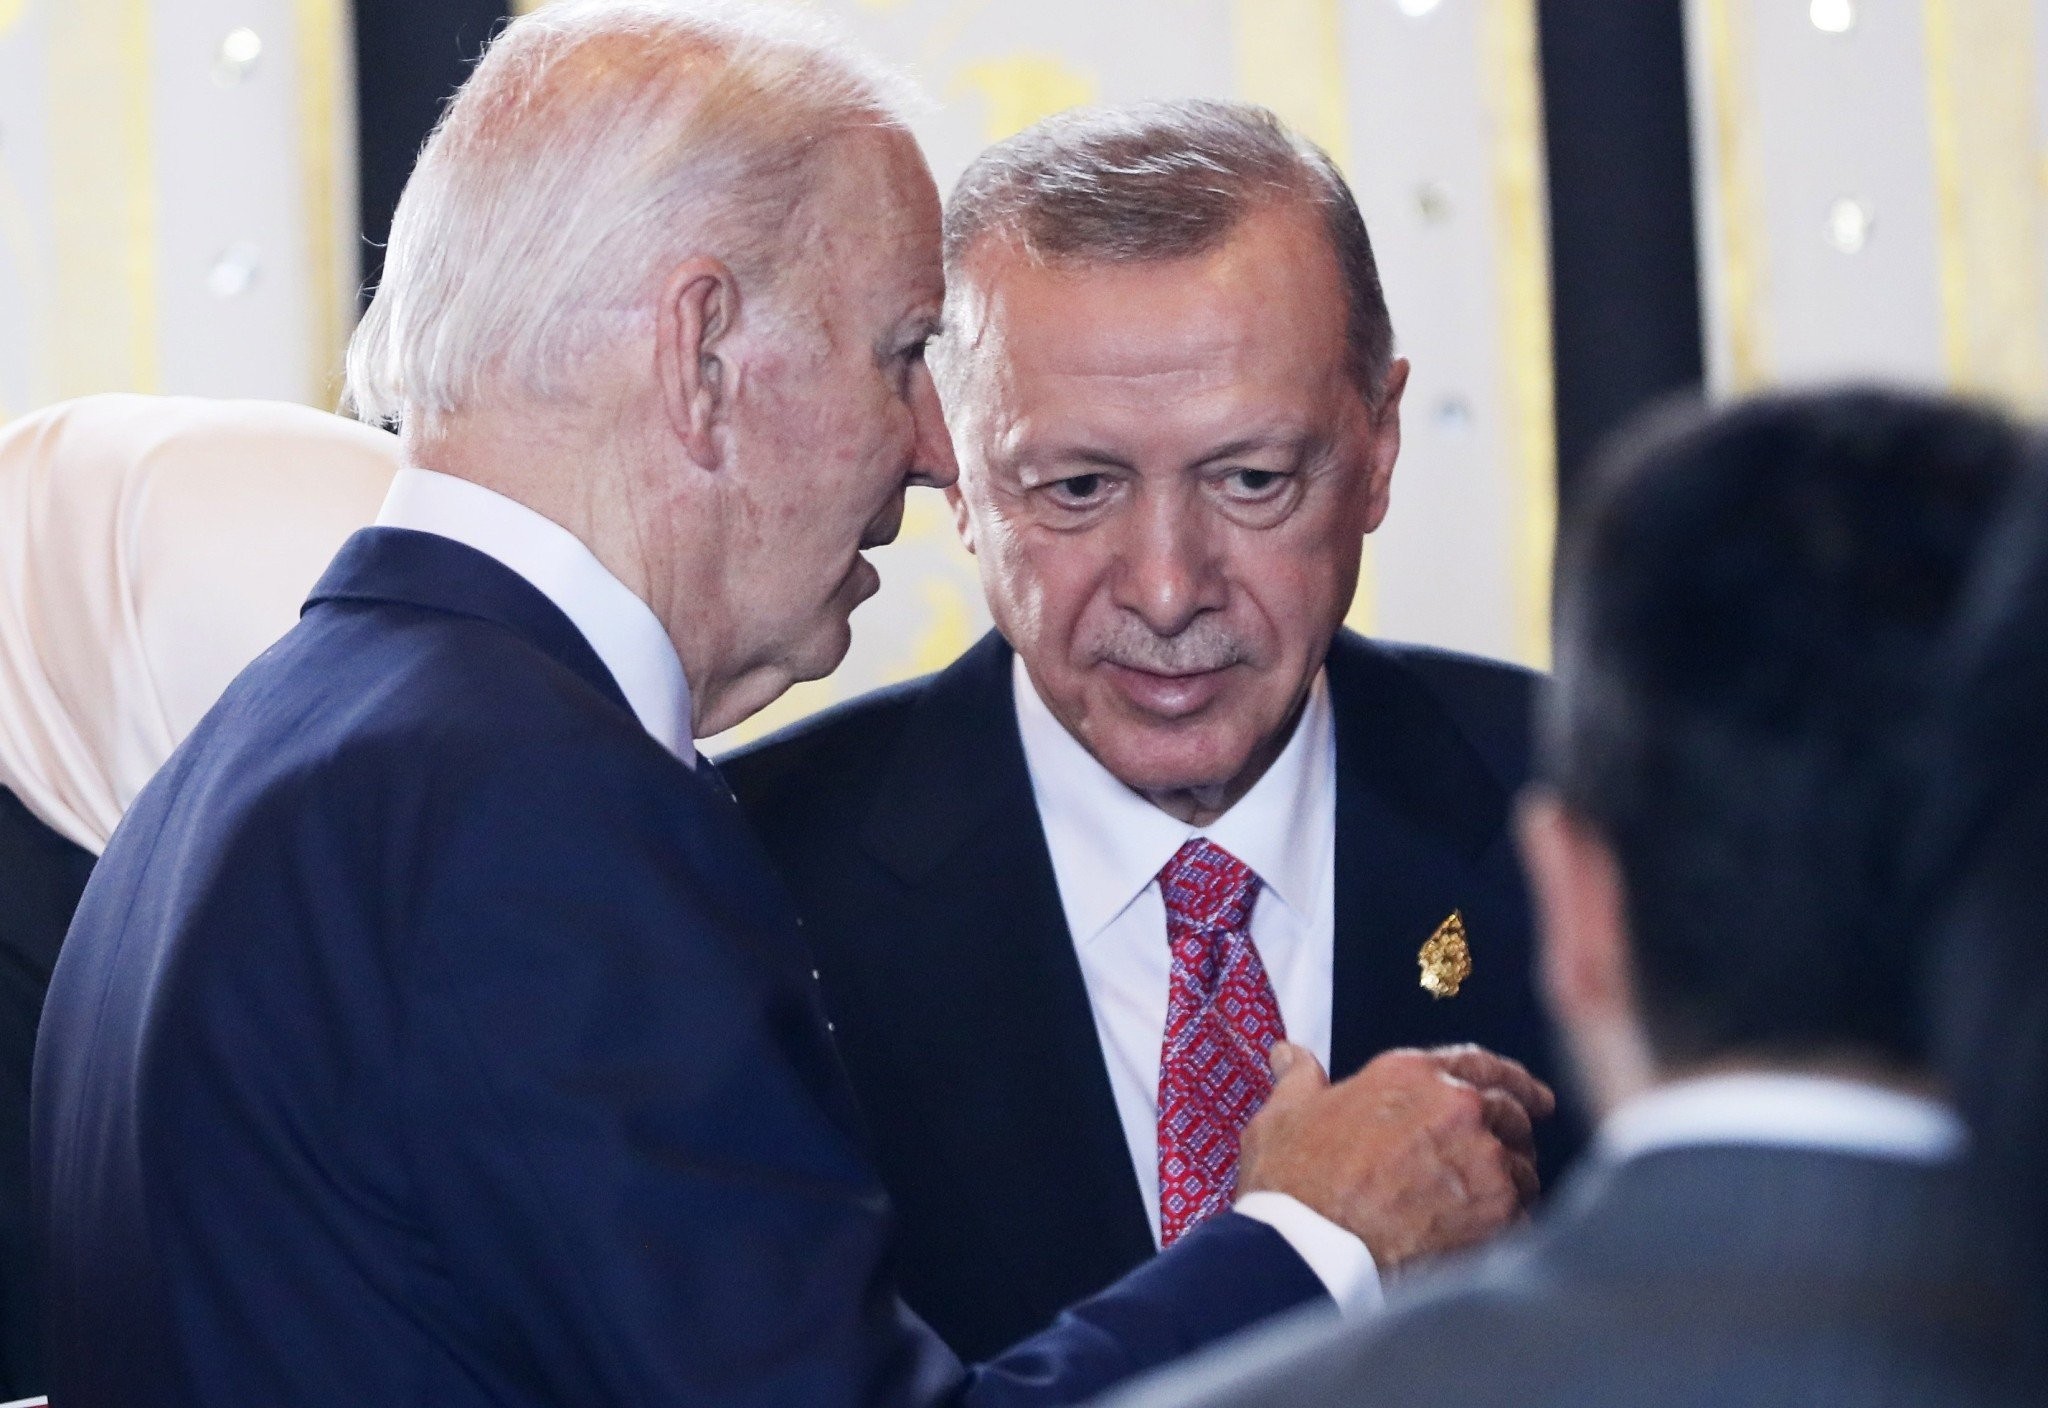 Επίσκεψη Ερντογάν στις ΗΠΑ: Πως σχολιάζουν Λευκός Οίκος και Άγκυρα την αναβολή και ο ρόλος του Ισραήλ